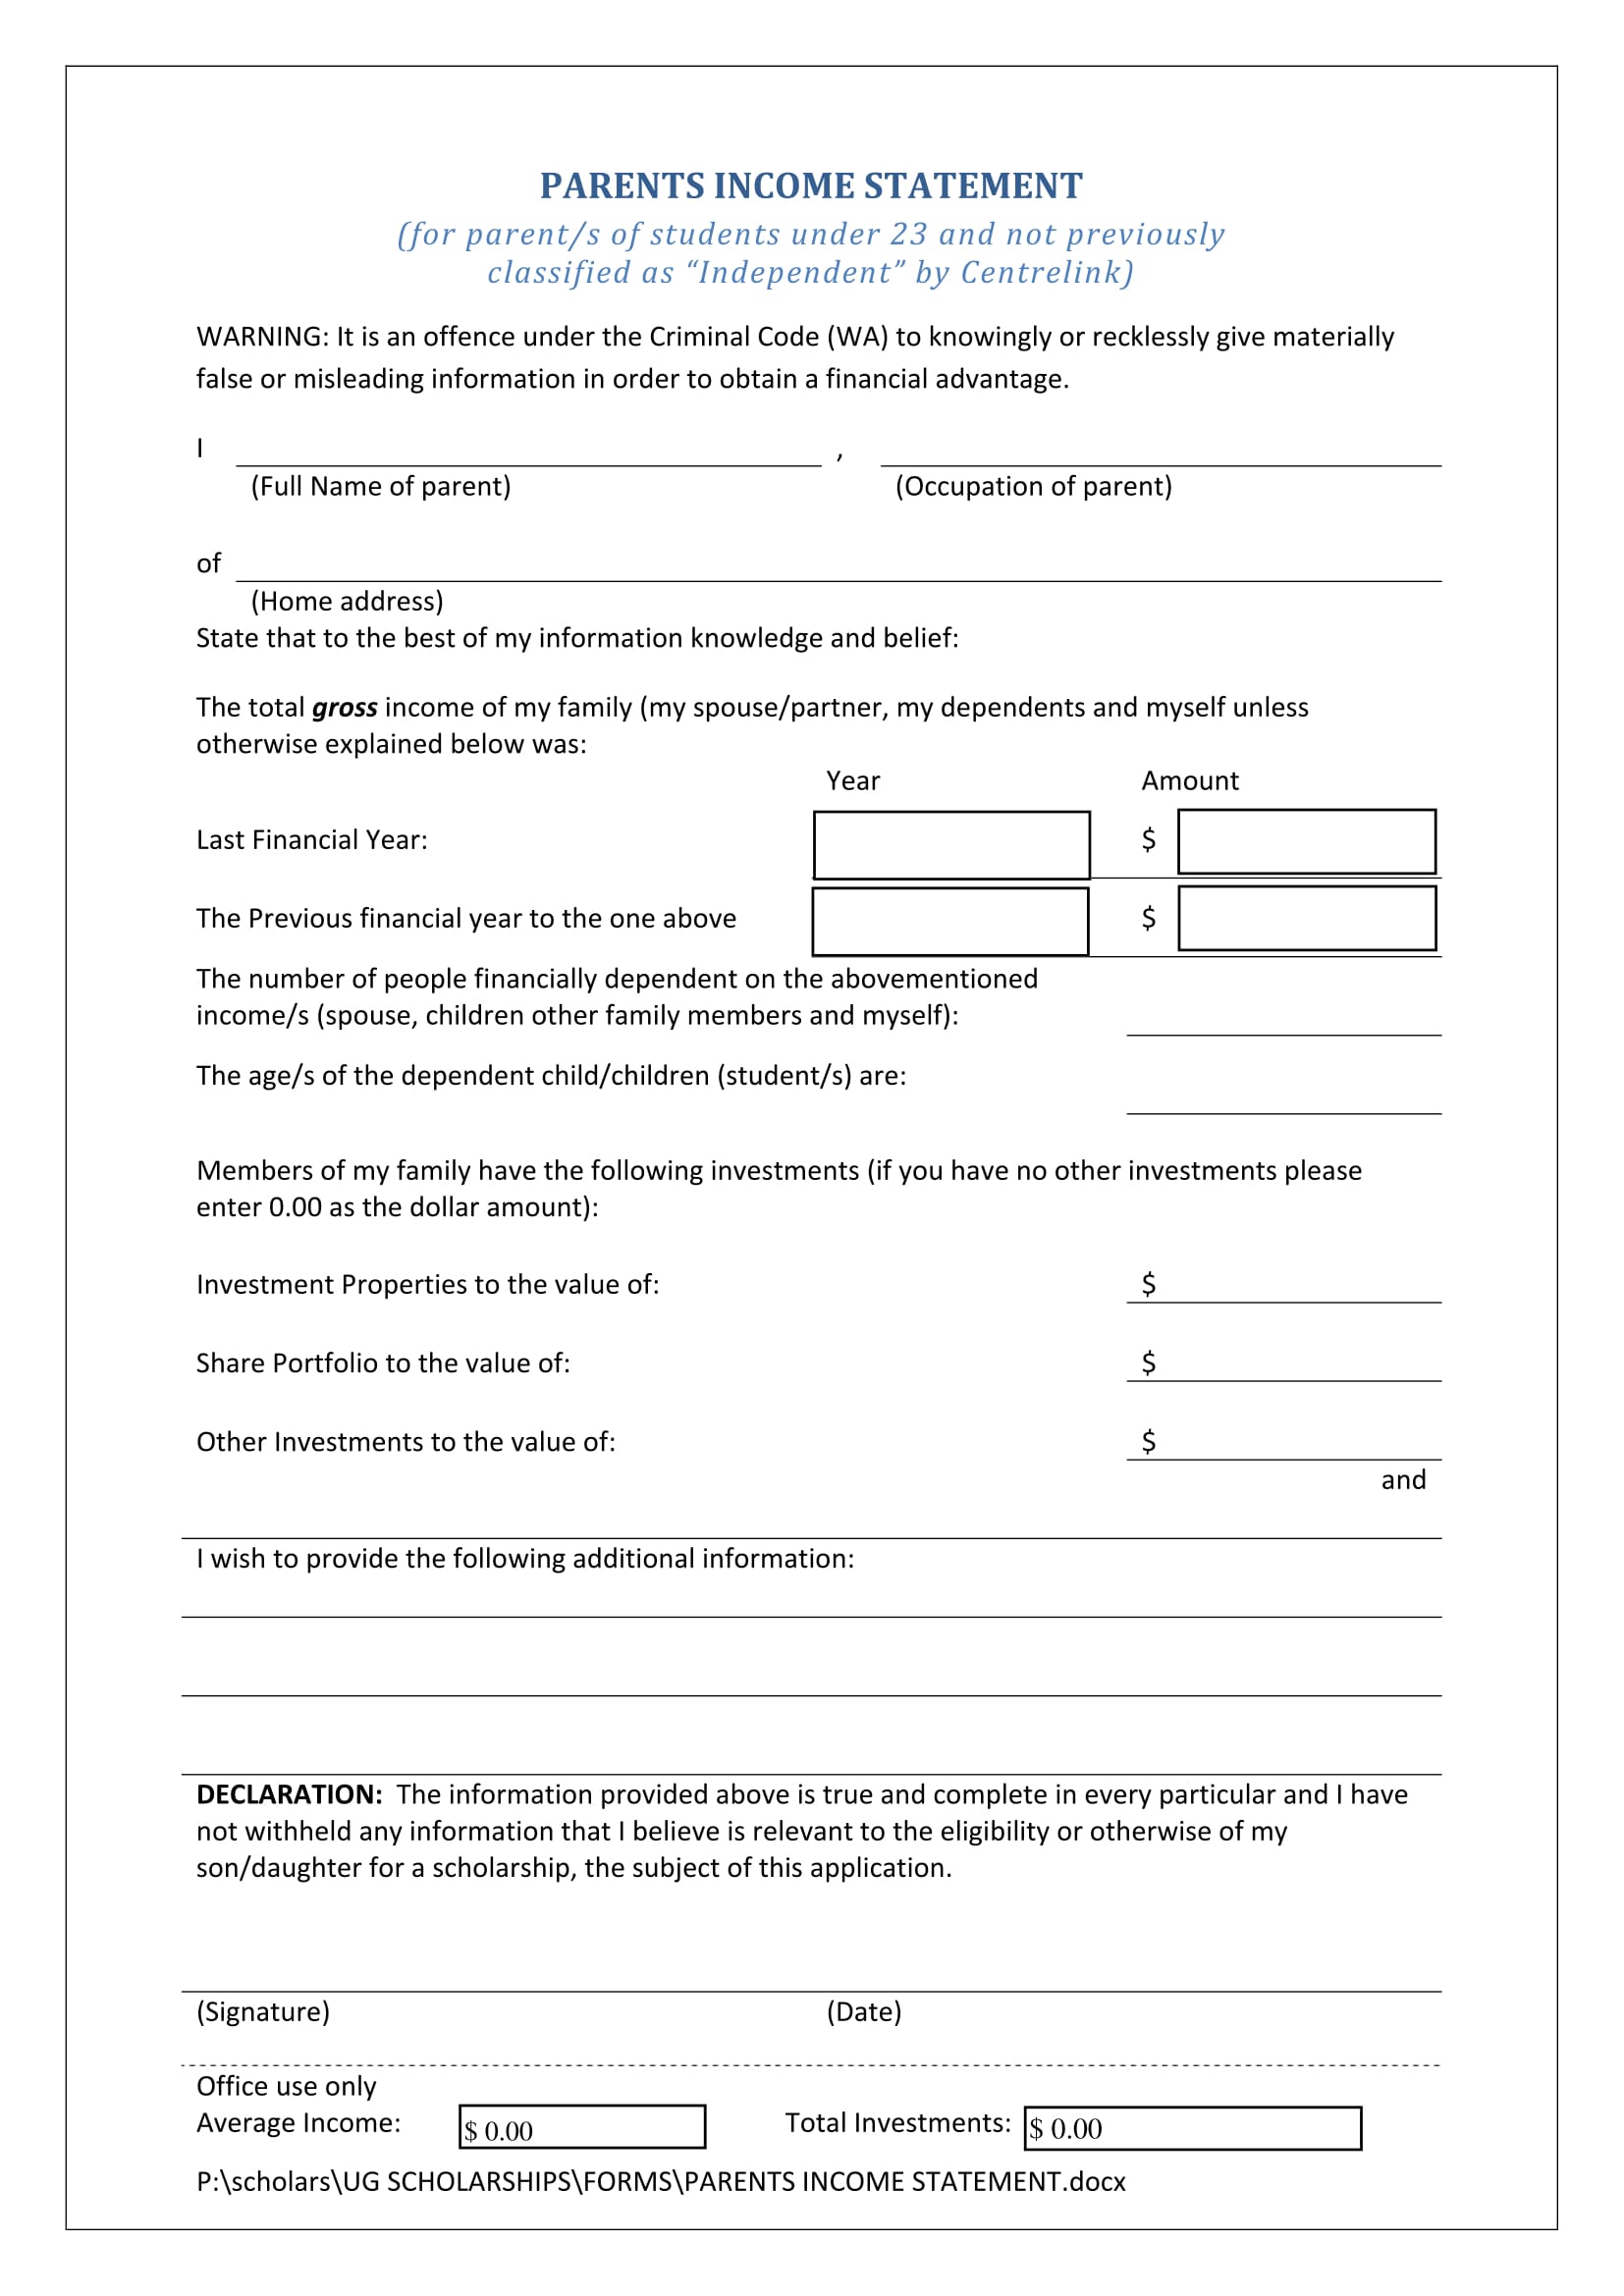 parents income statement form 1